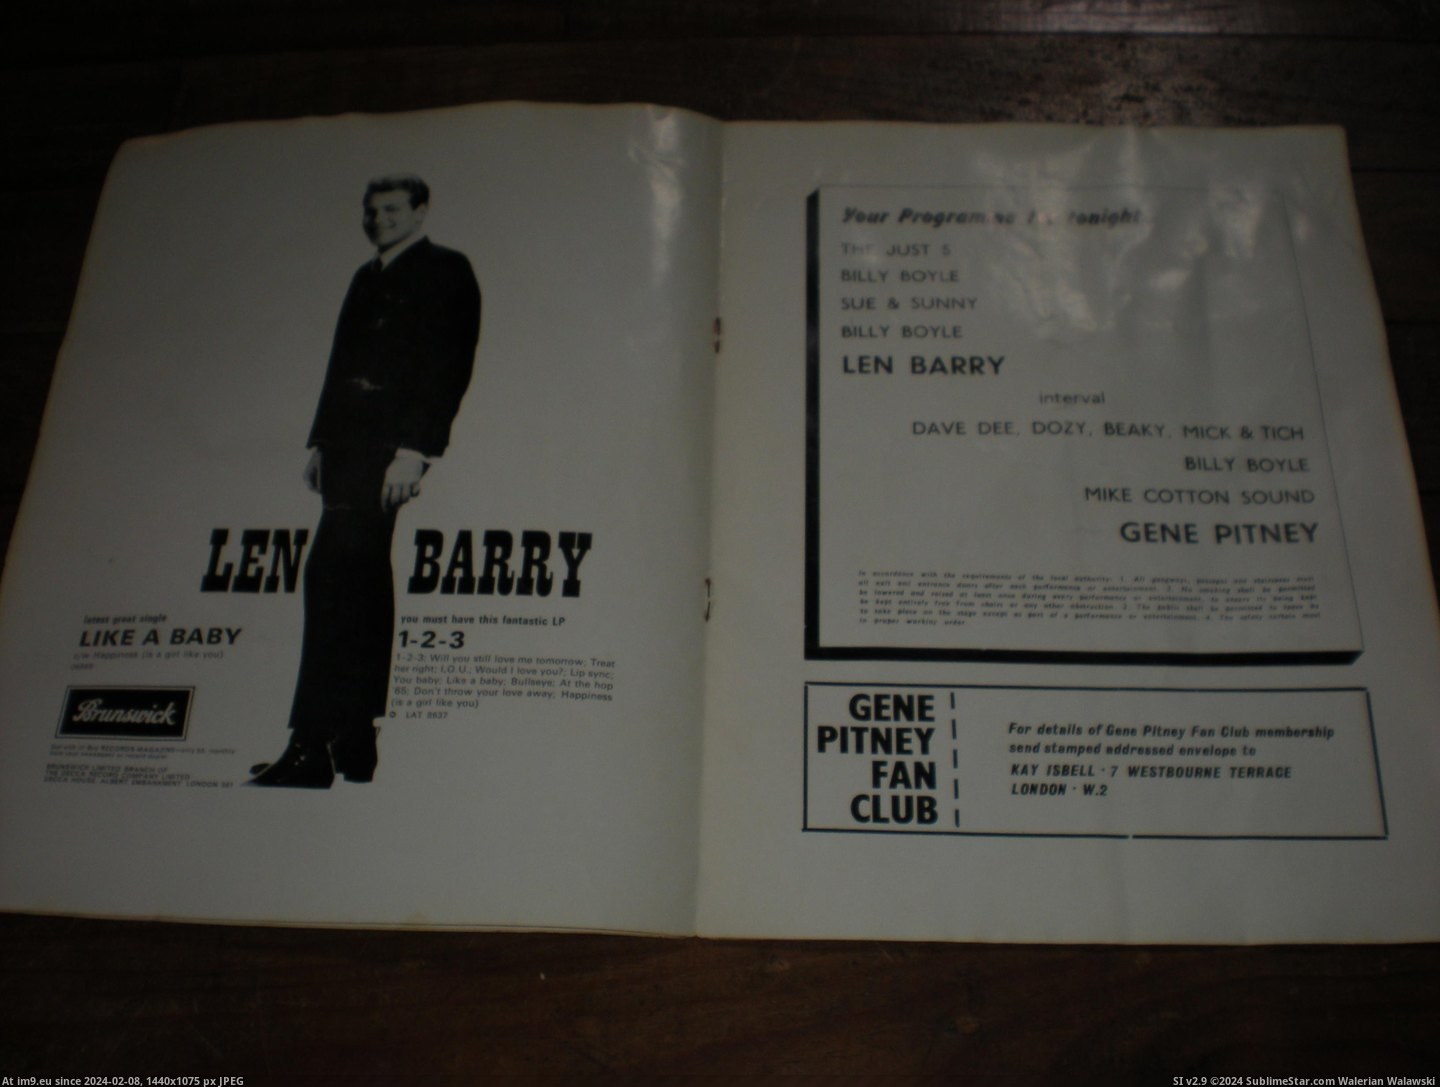 #Gene #Pitney #Prog Gene Pitney prog 4 Pic. (Bild von album new 1))